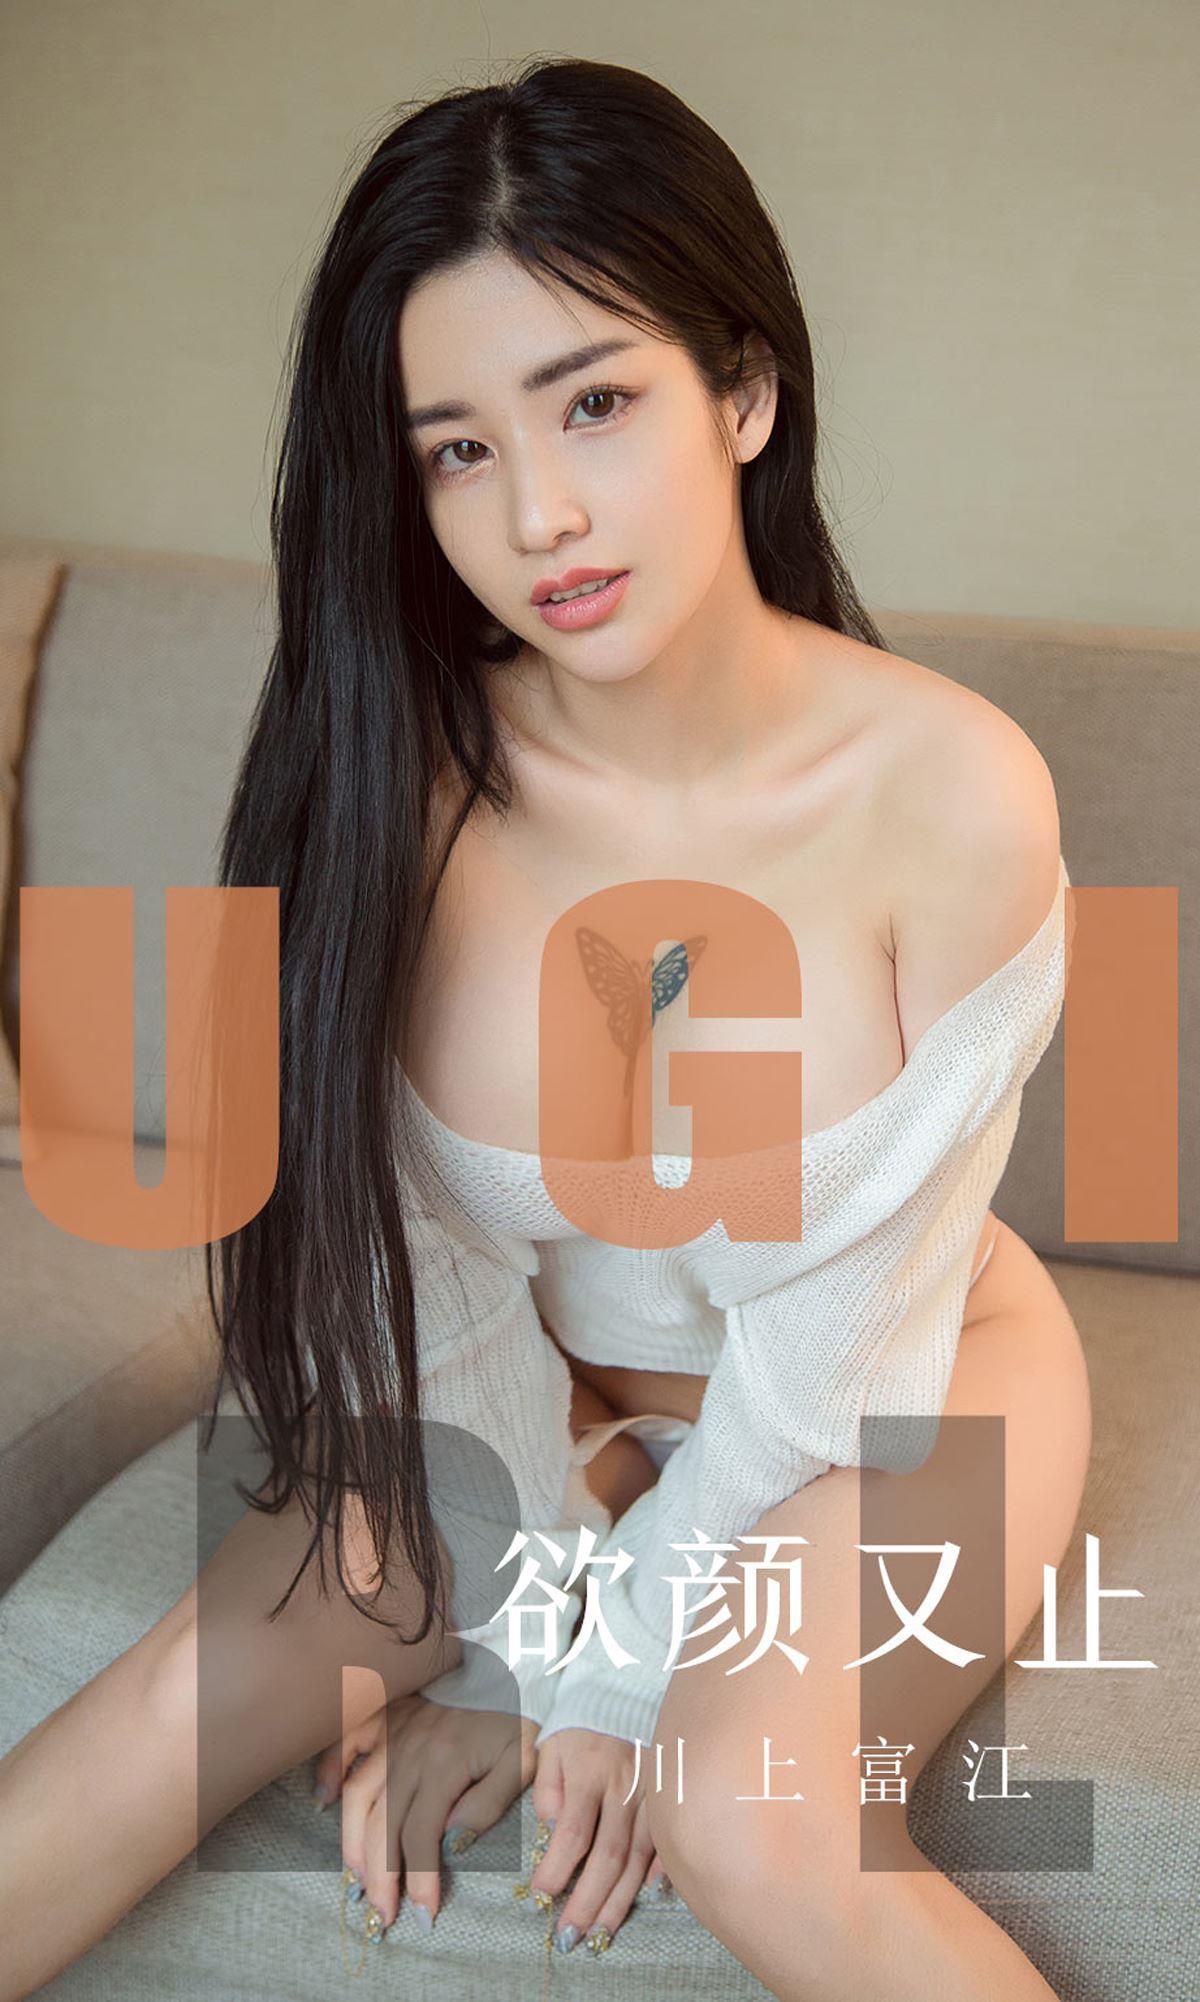 Ugirls 爱尤物 2019刊 No.1592 川上富江 - 11.jpg